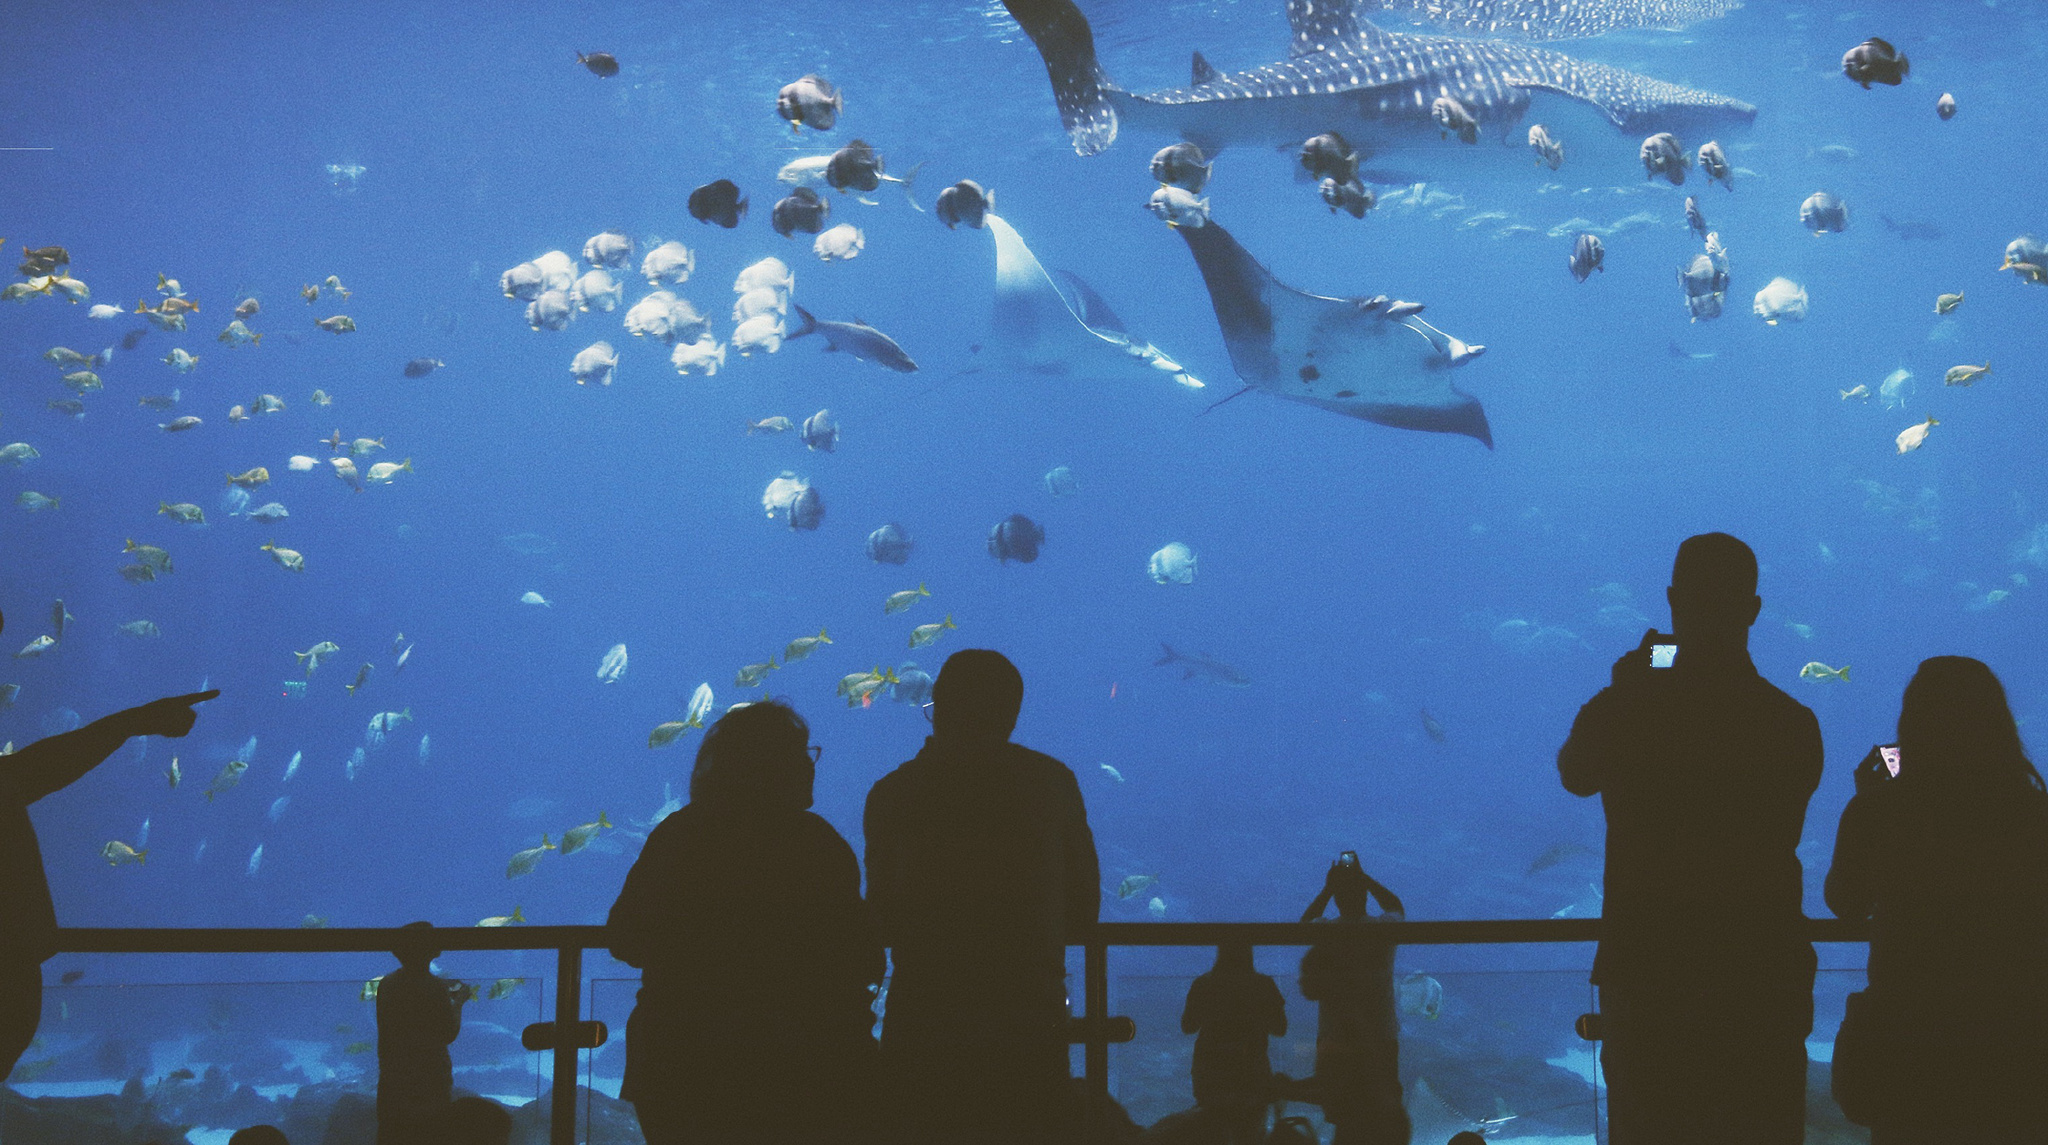 一直覺得水族館像是另一個星球的入口,安靜又溫柔